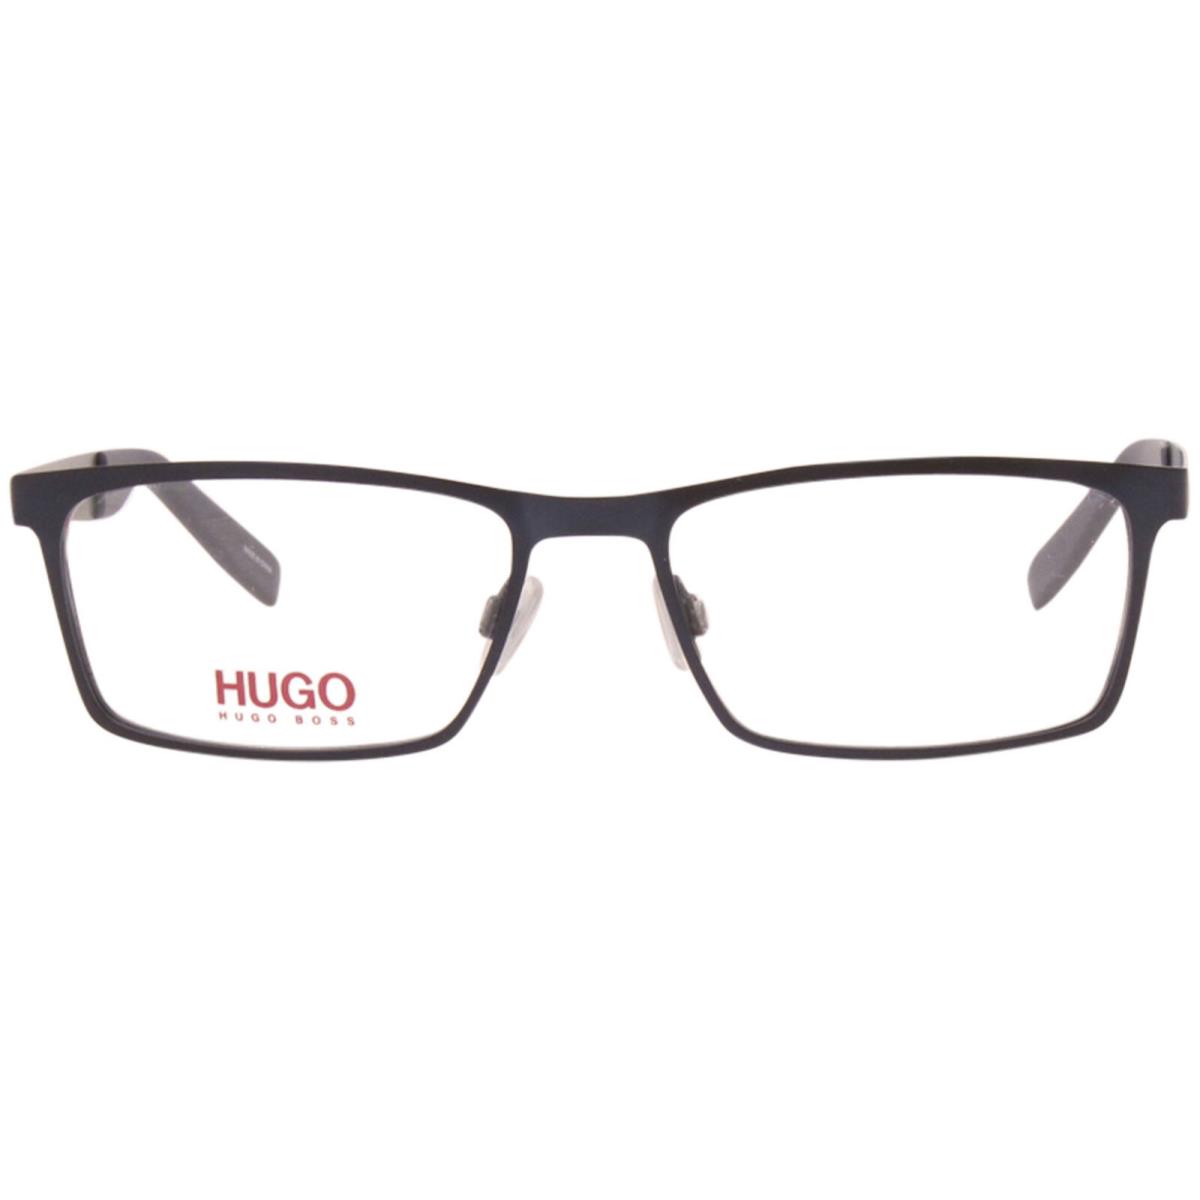 Hugo Boss HG-0228 Fll Eyeglasses Men`s Matte Blue Full Rim Optical Frame 54mm